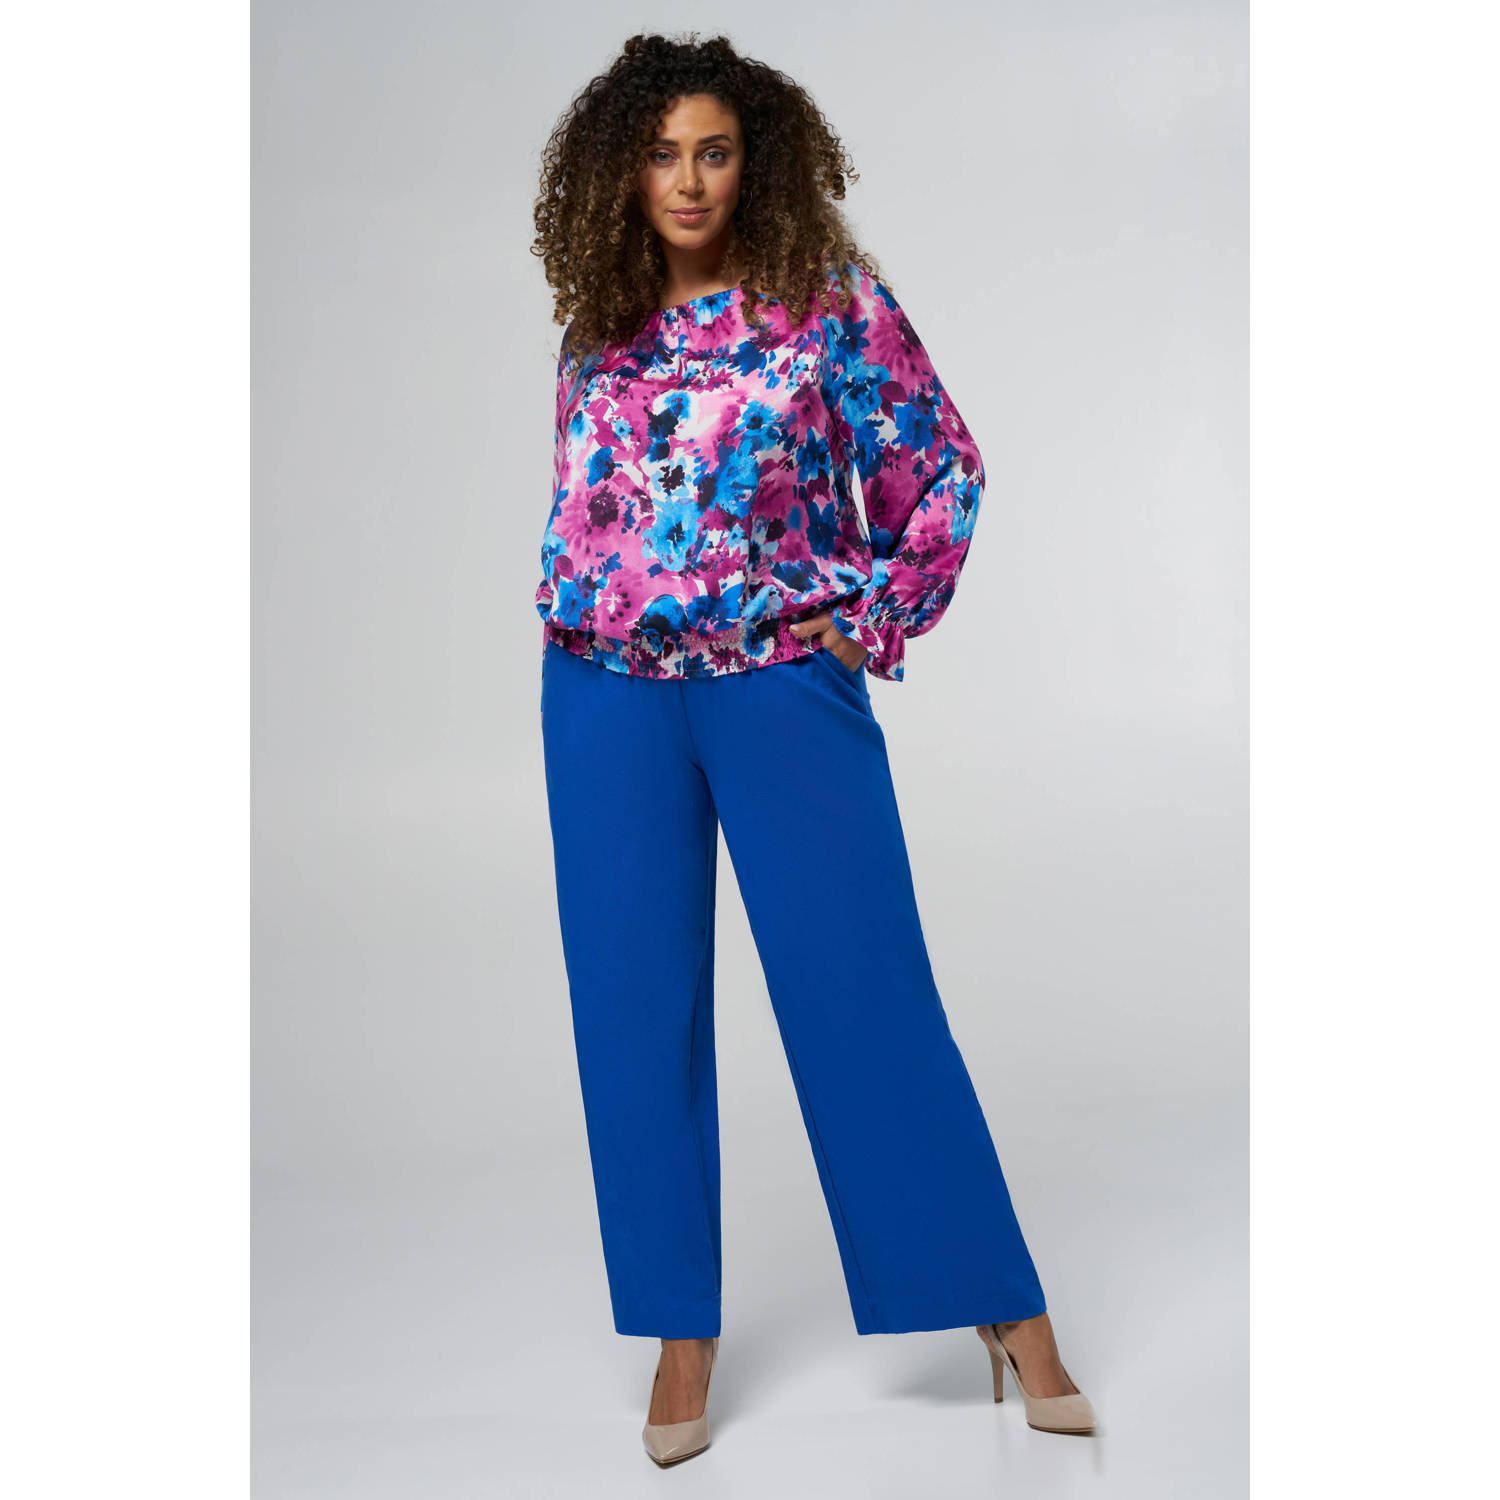 MS Mode blousetop met all over print en ruches paars blauw ecru